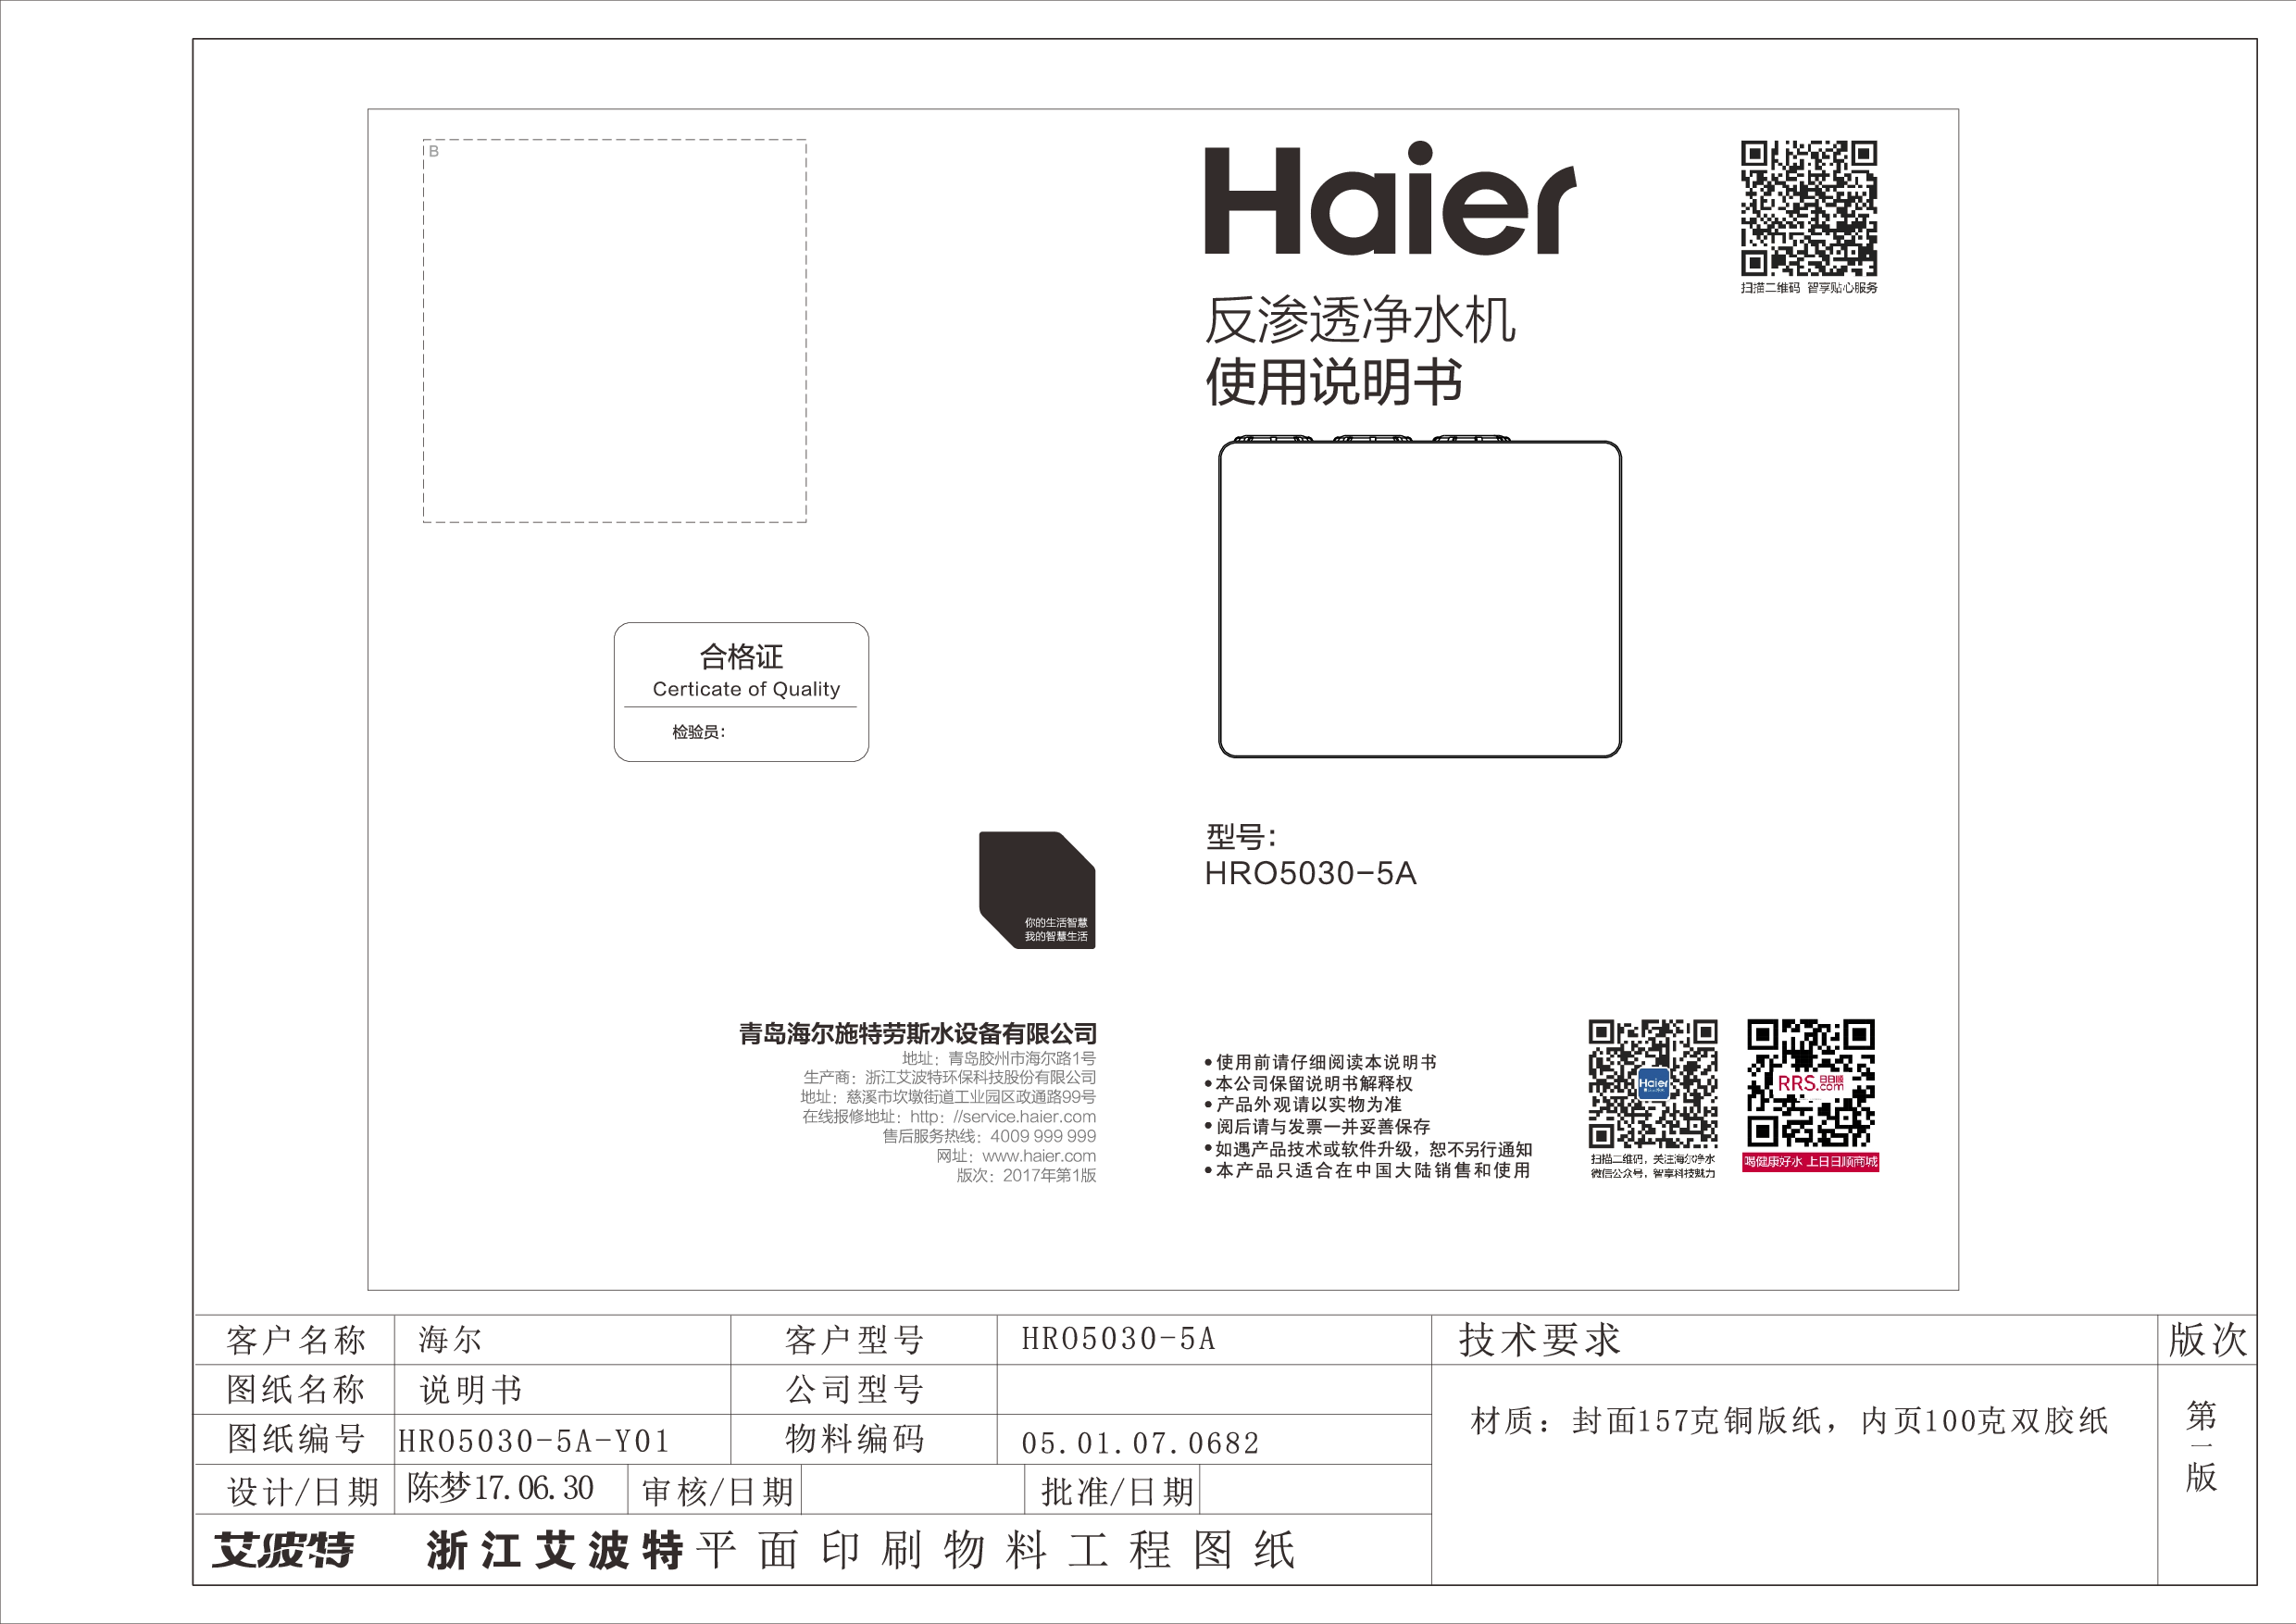 海尔 Haier HRO5030-5A 使用说明书 封面